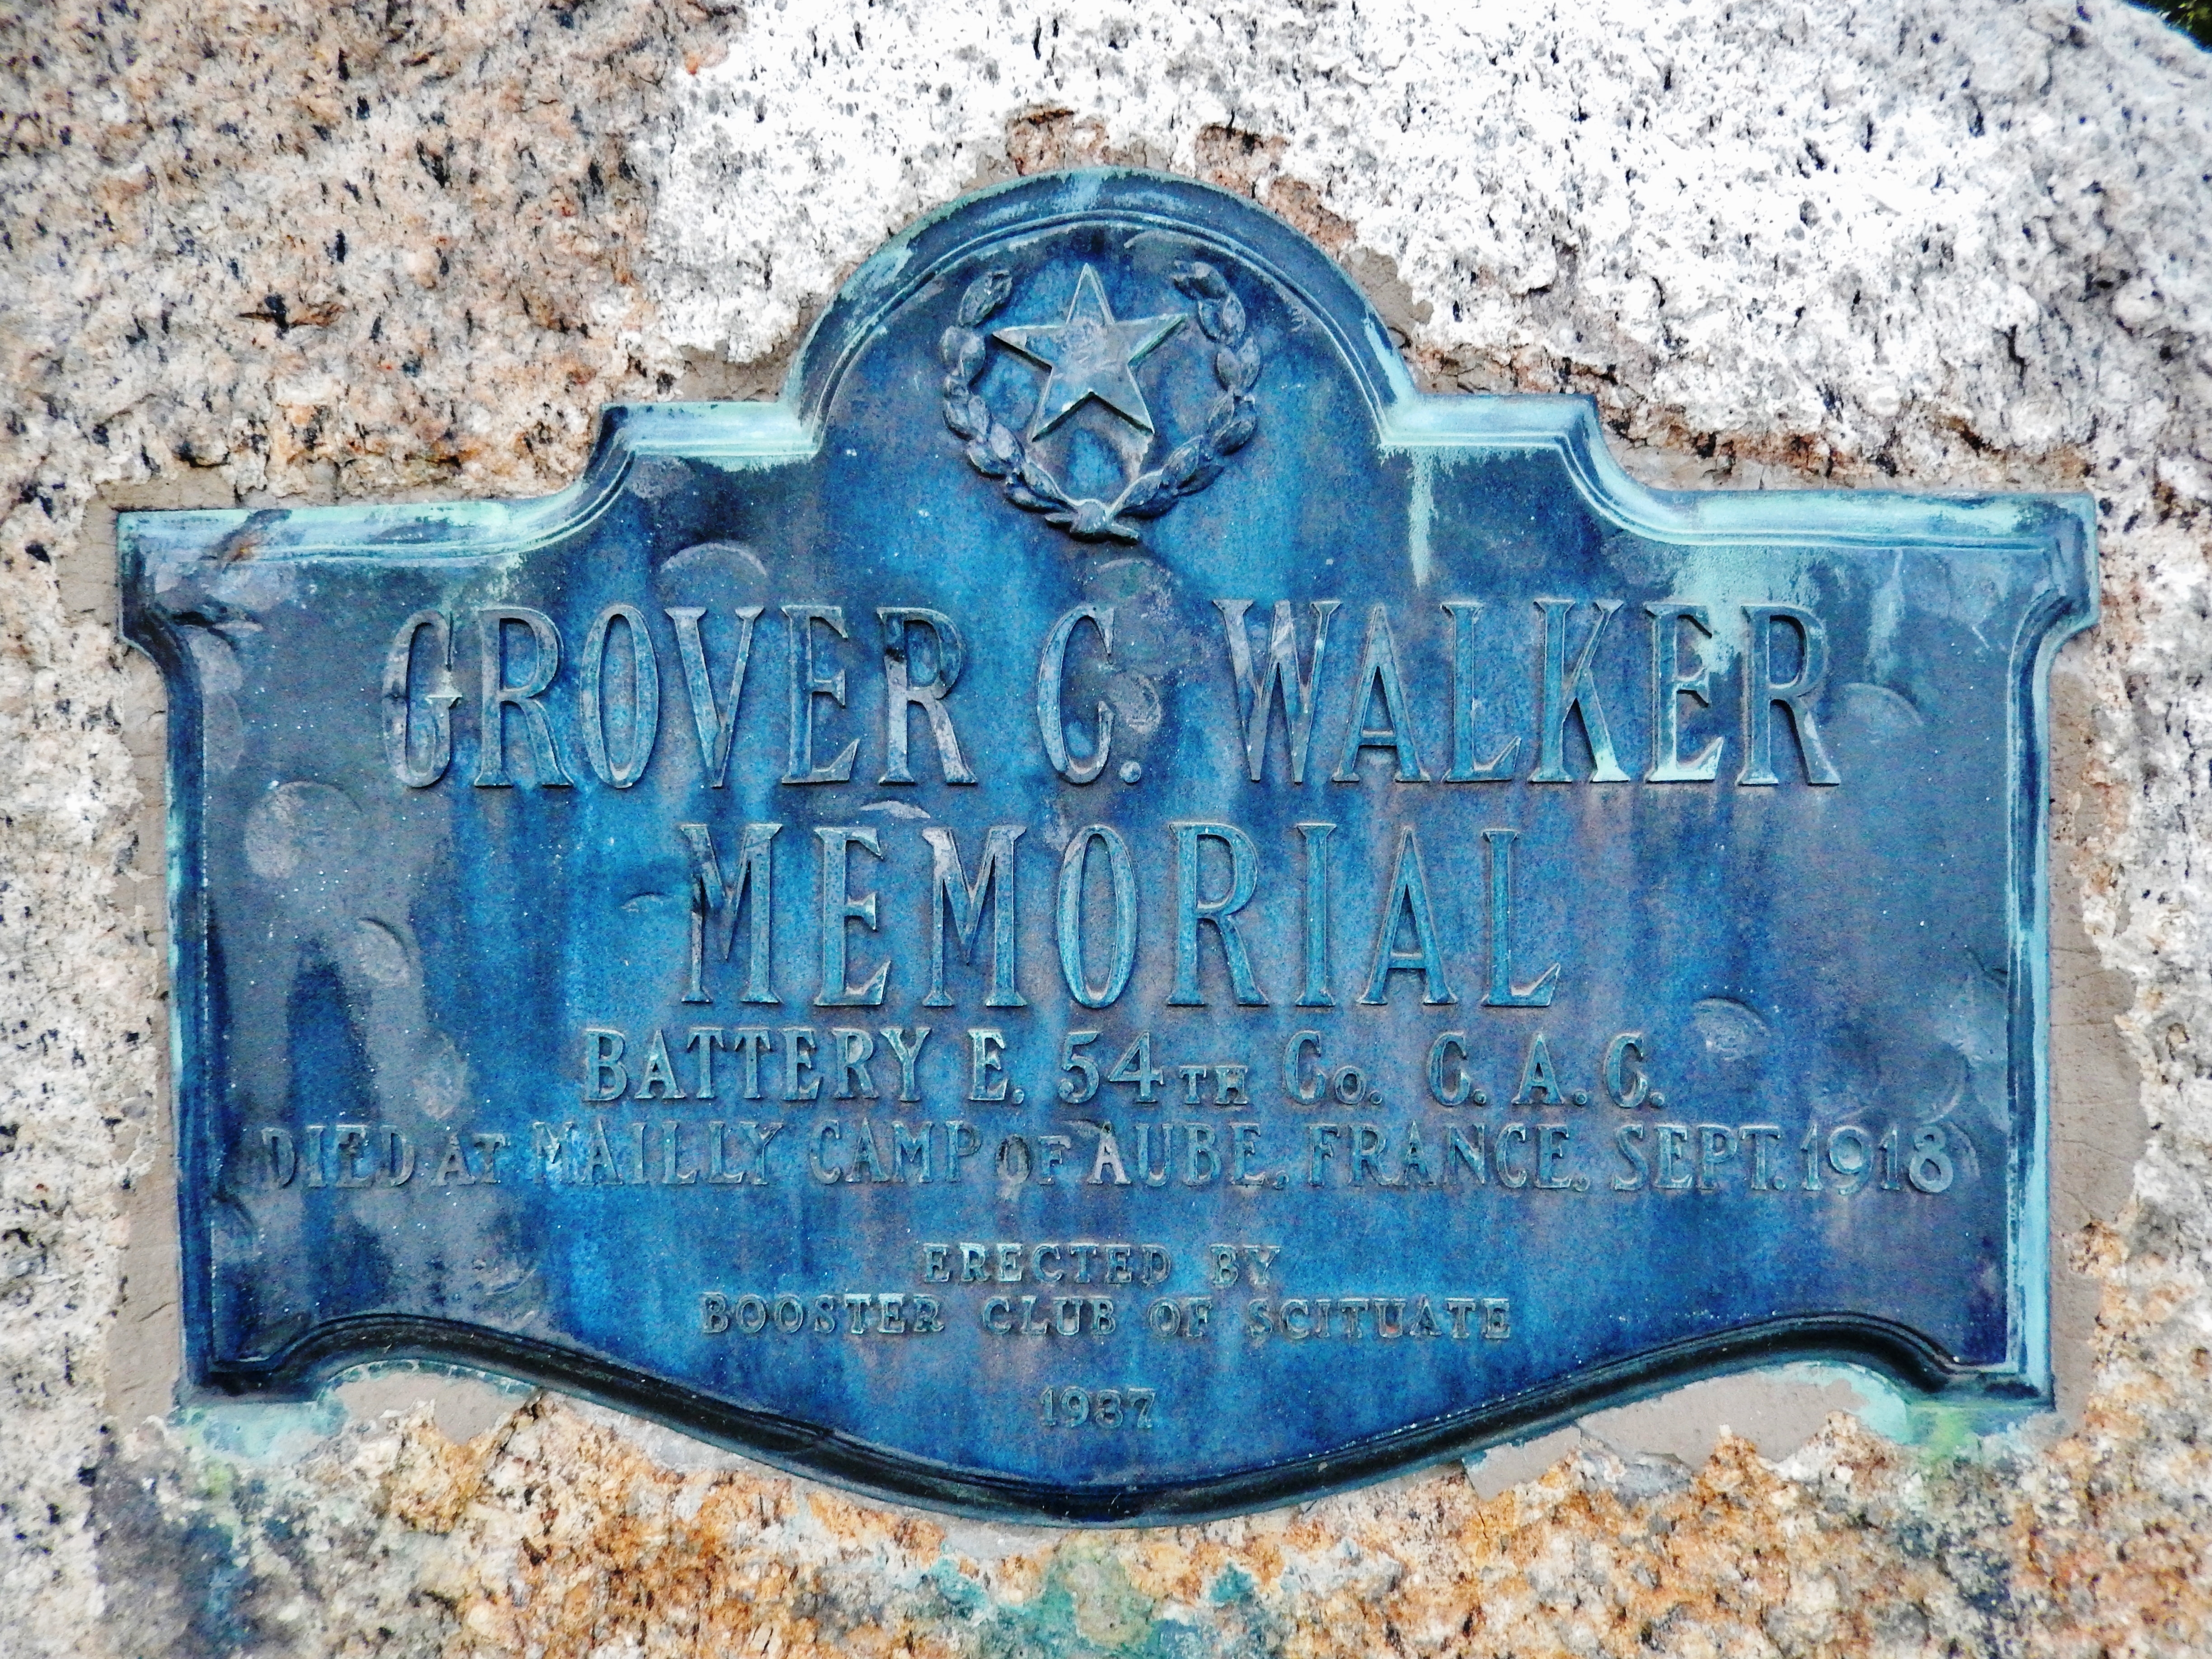 Grover C. Walker Memorial